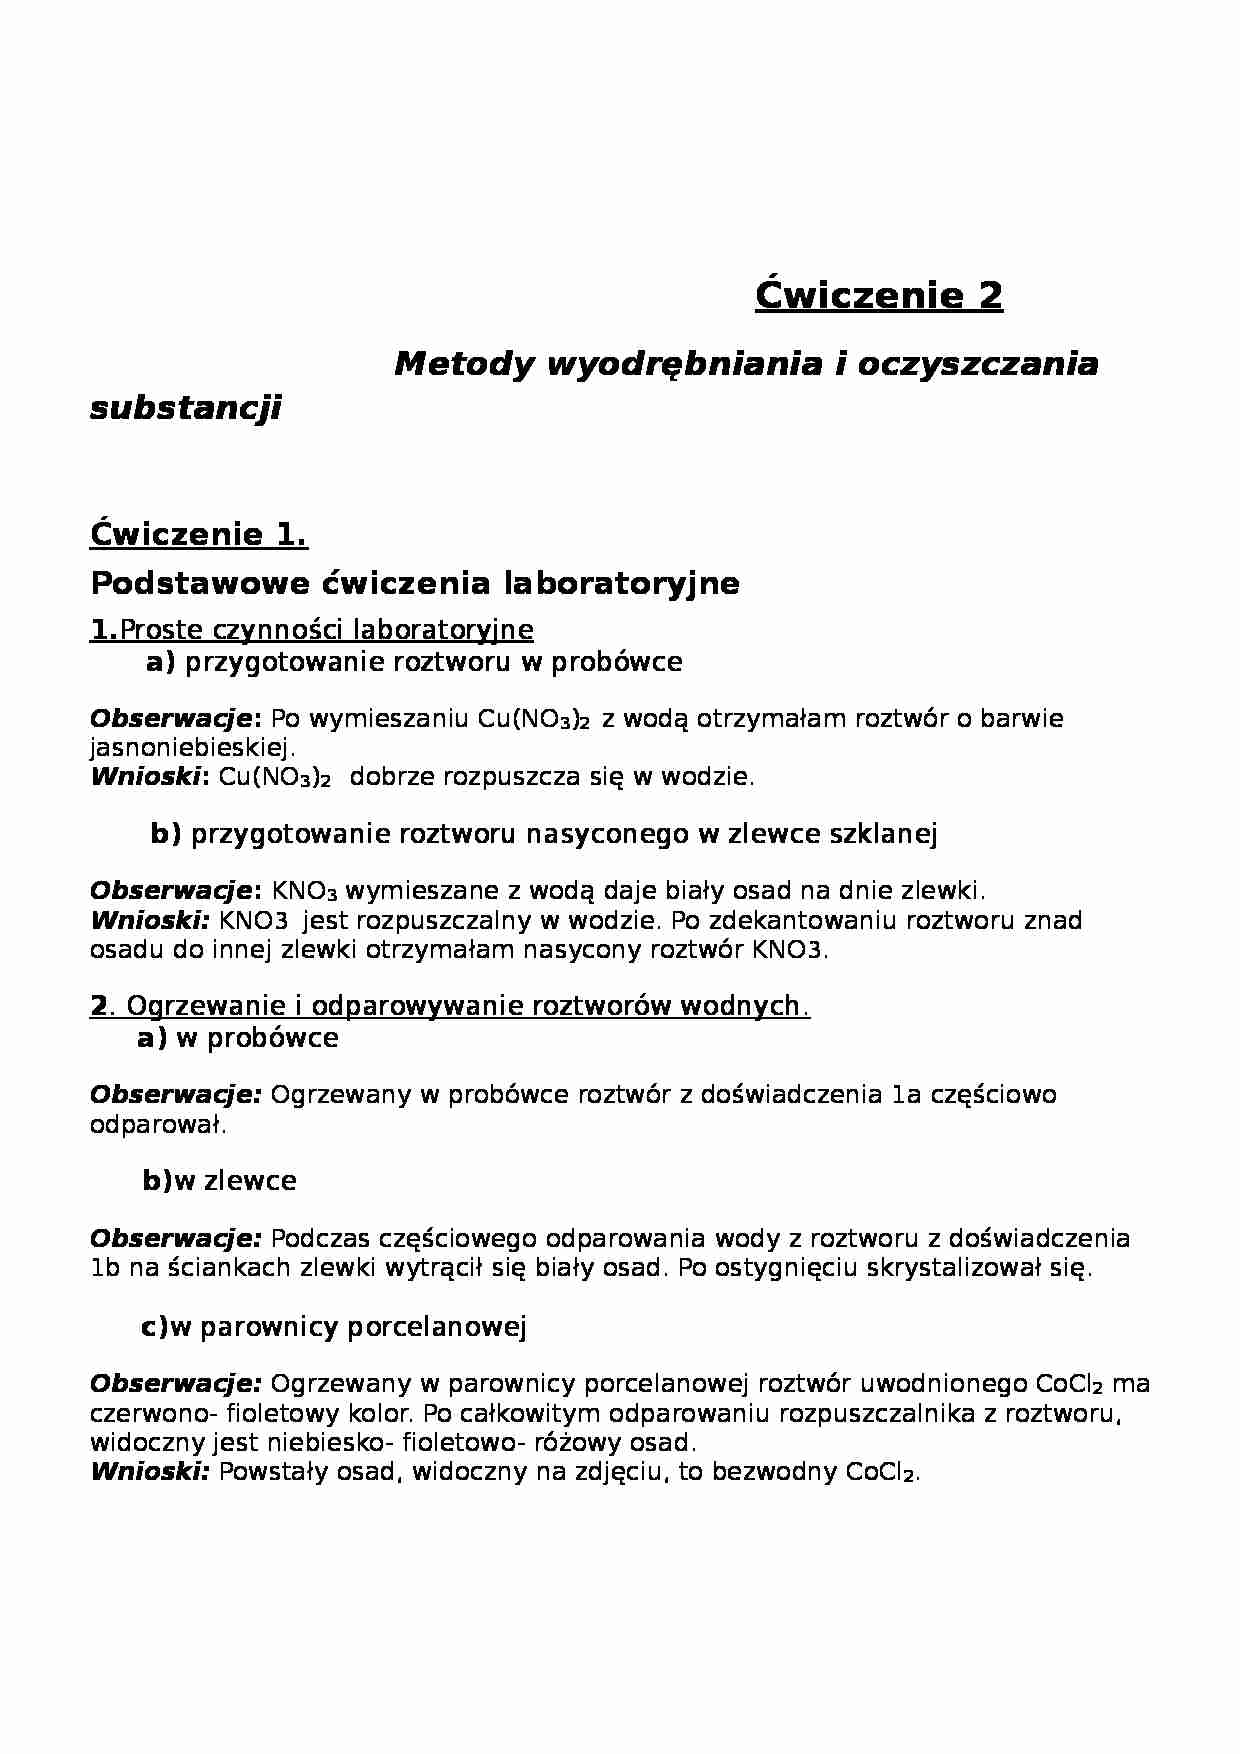 Metody wyodrębniania i oczyszczania substancji-sprawozdanie - strona 1